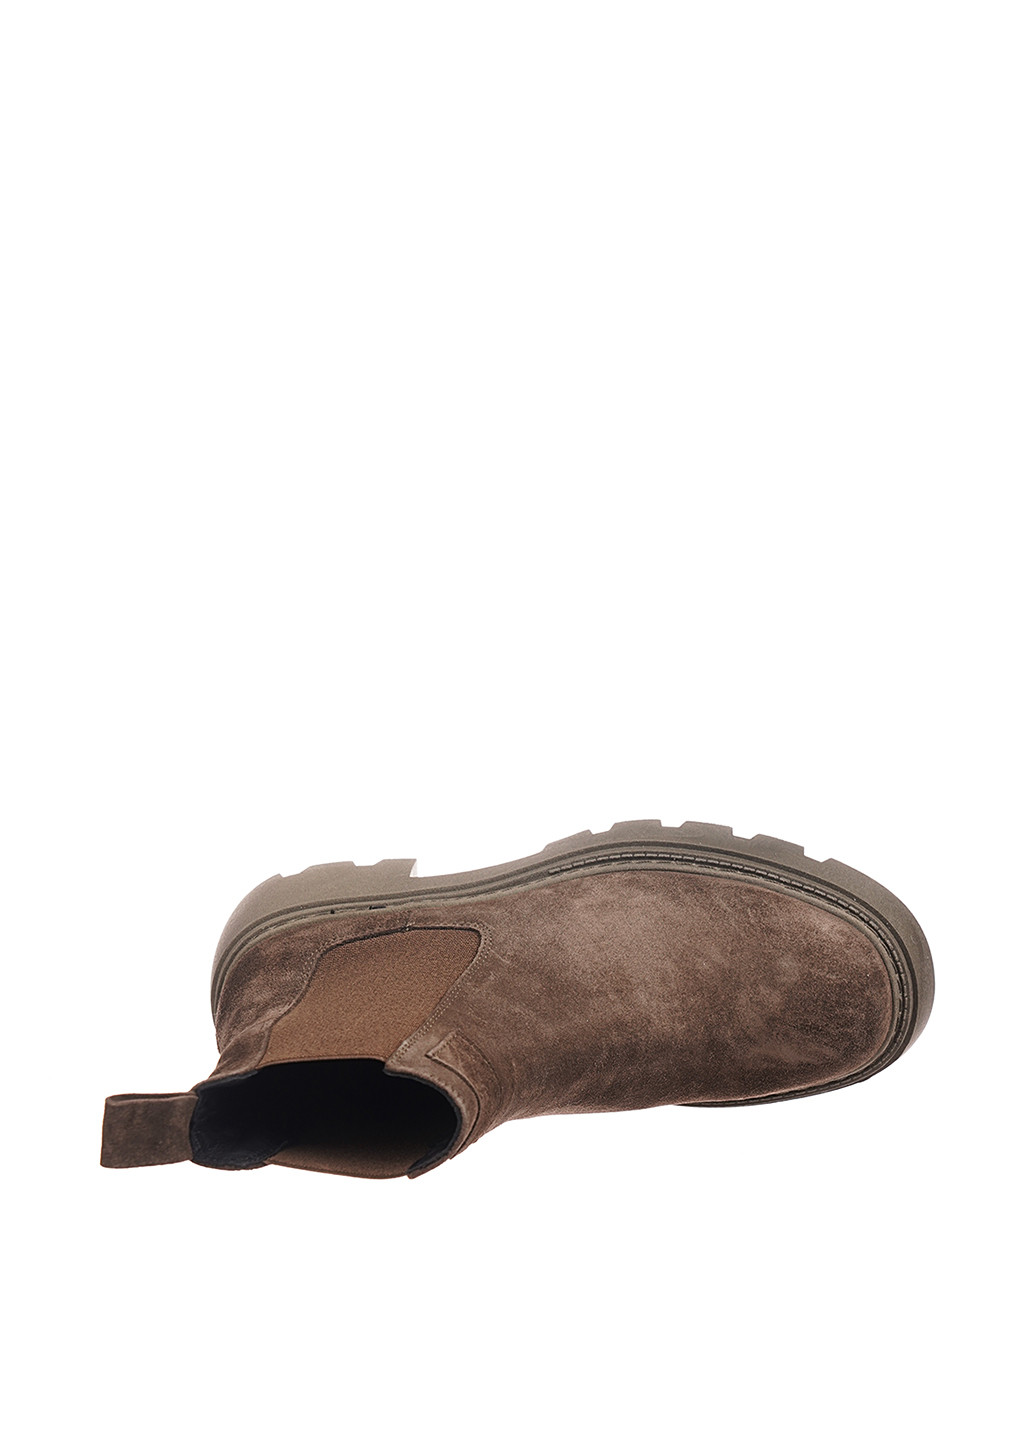 Осенние ботинки Mario Muzi из натуральной замши